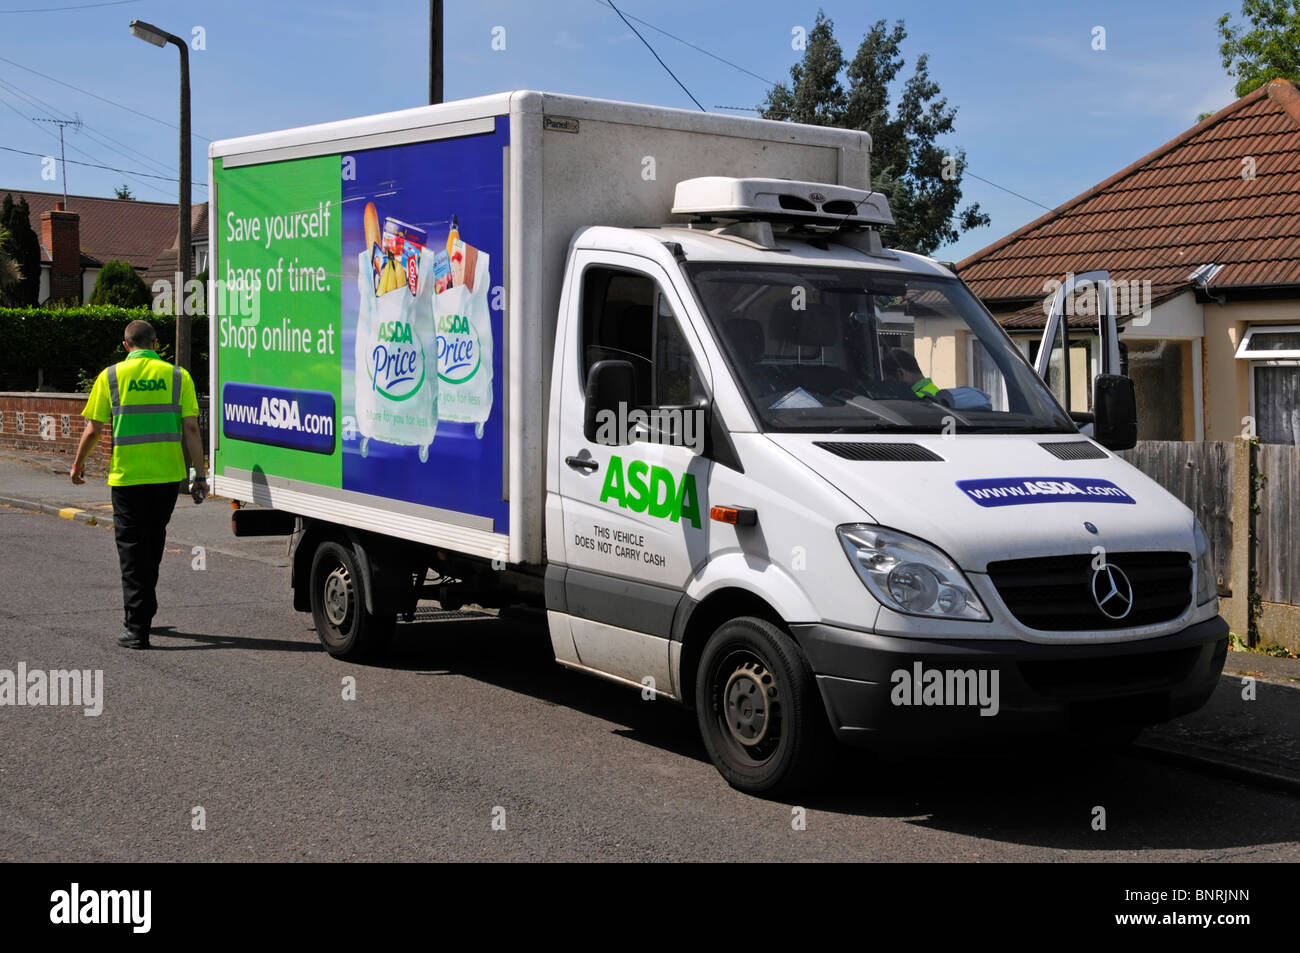 ASDA Supermarkt Geschäft Online-Internet Lebensmittel-Bestellung geliefert von Van Fahrer auf der Straße bei Kunden zu Hause geparkt Lieferung England Großbritannien Stockfoto